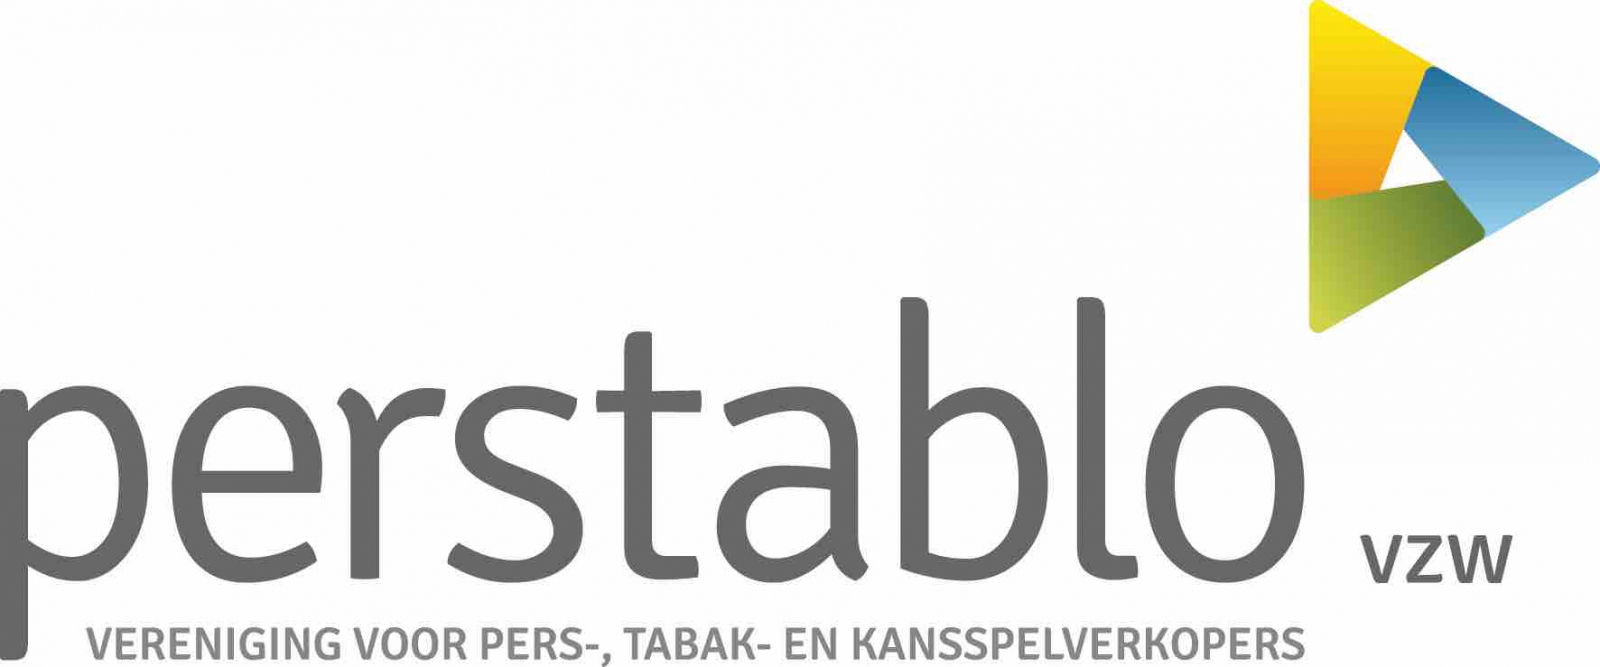 Perstablo logo vereniging voor pers-, tabak- en kansspelverkopers